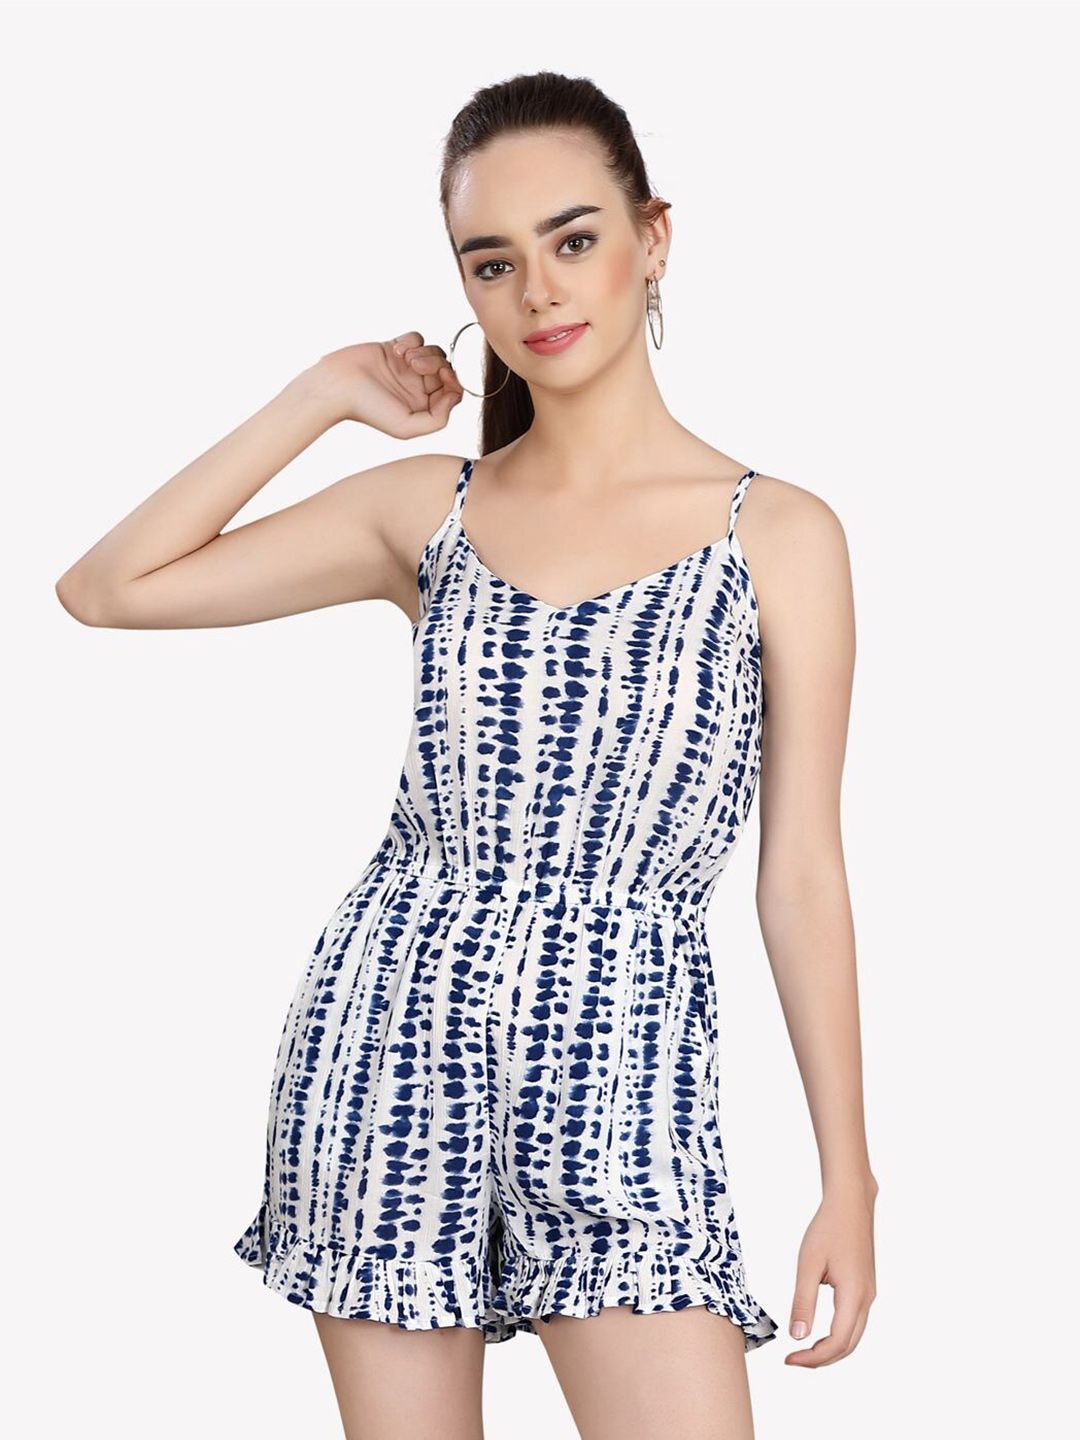 VASTRADO Blue & White Printed Jumpsuit Price in India